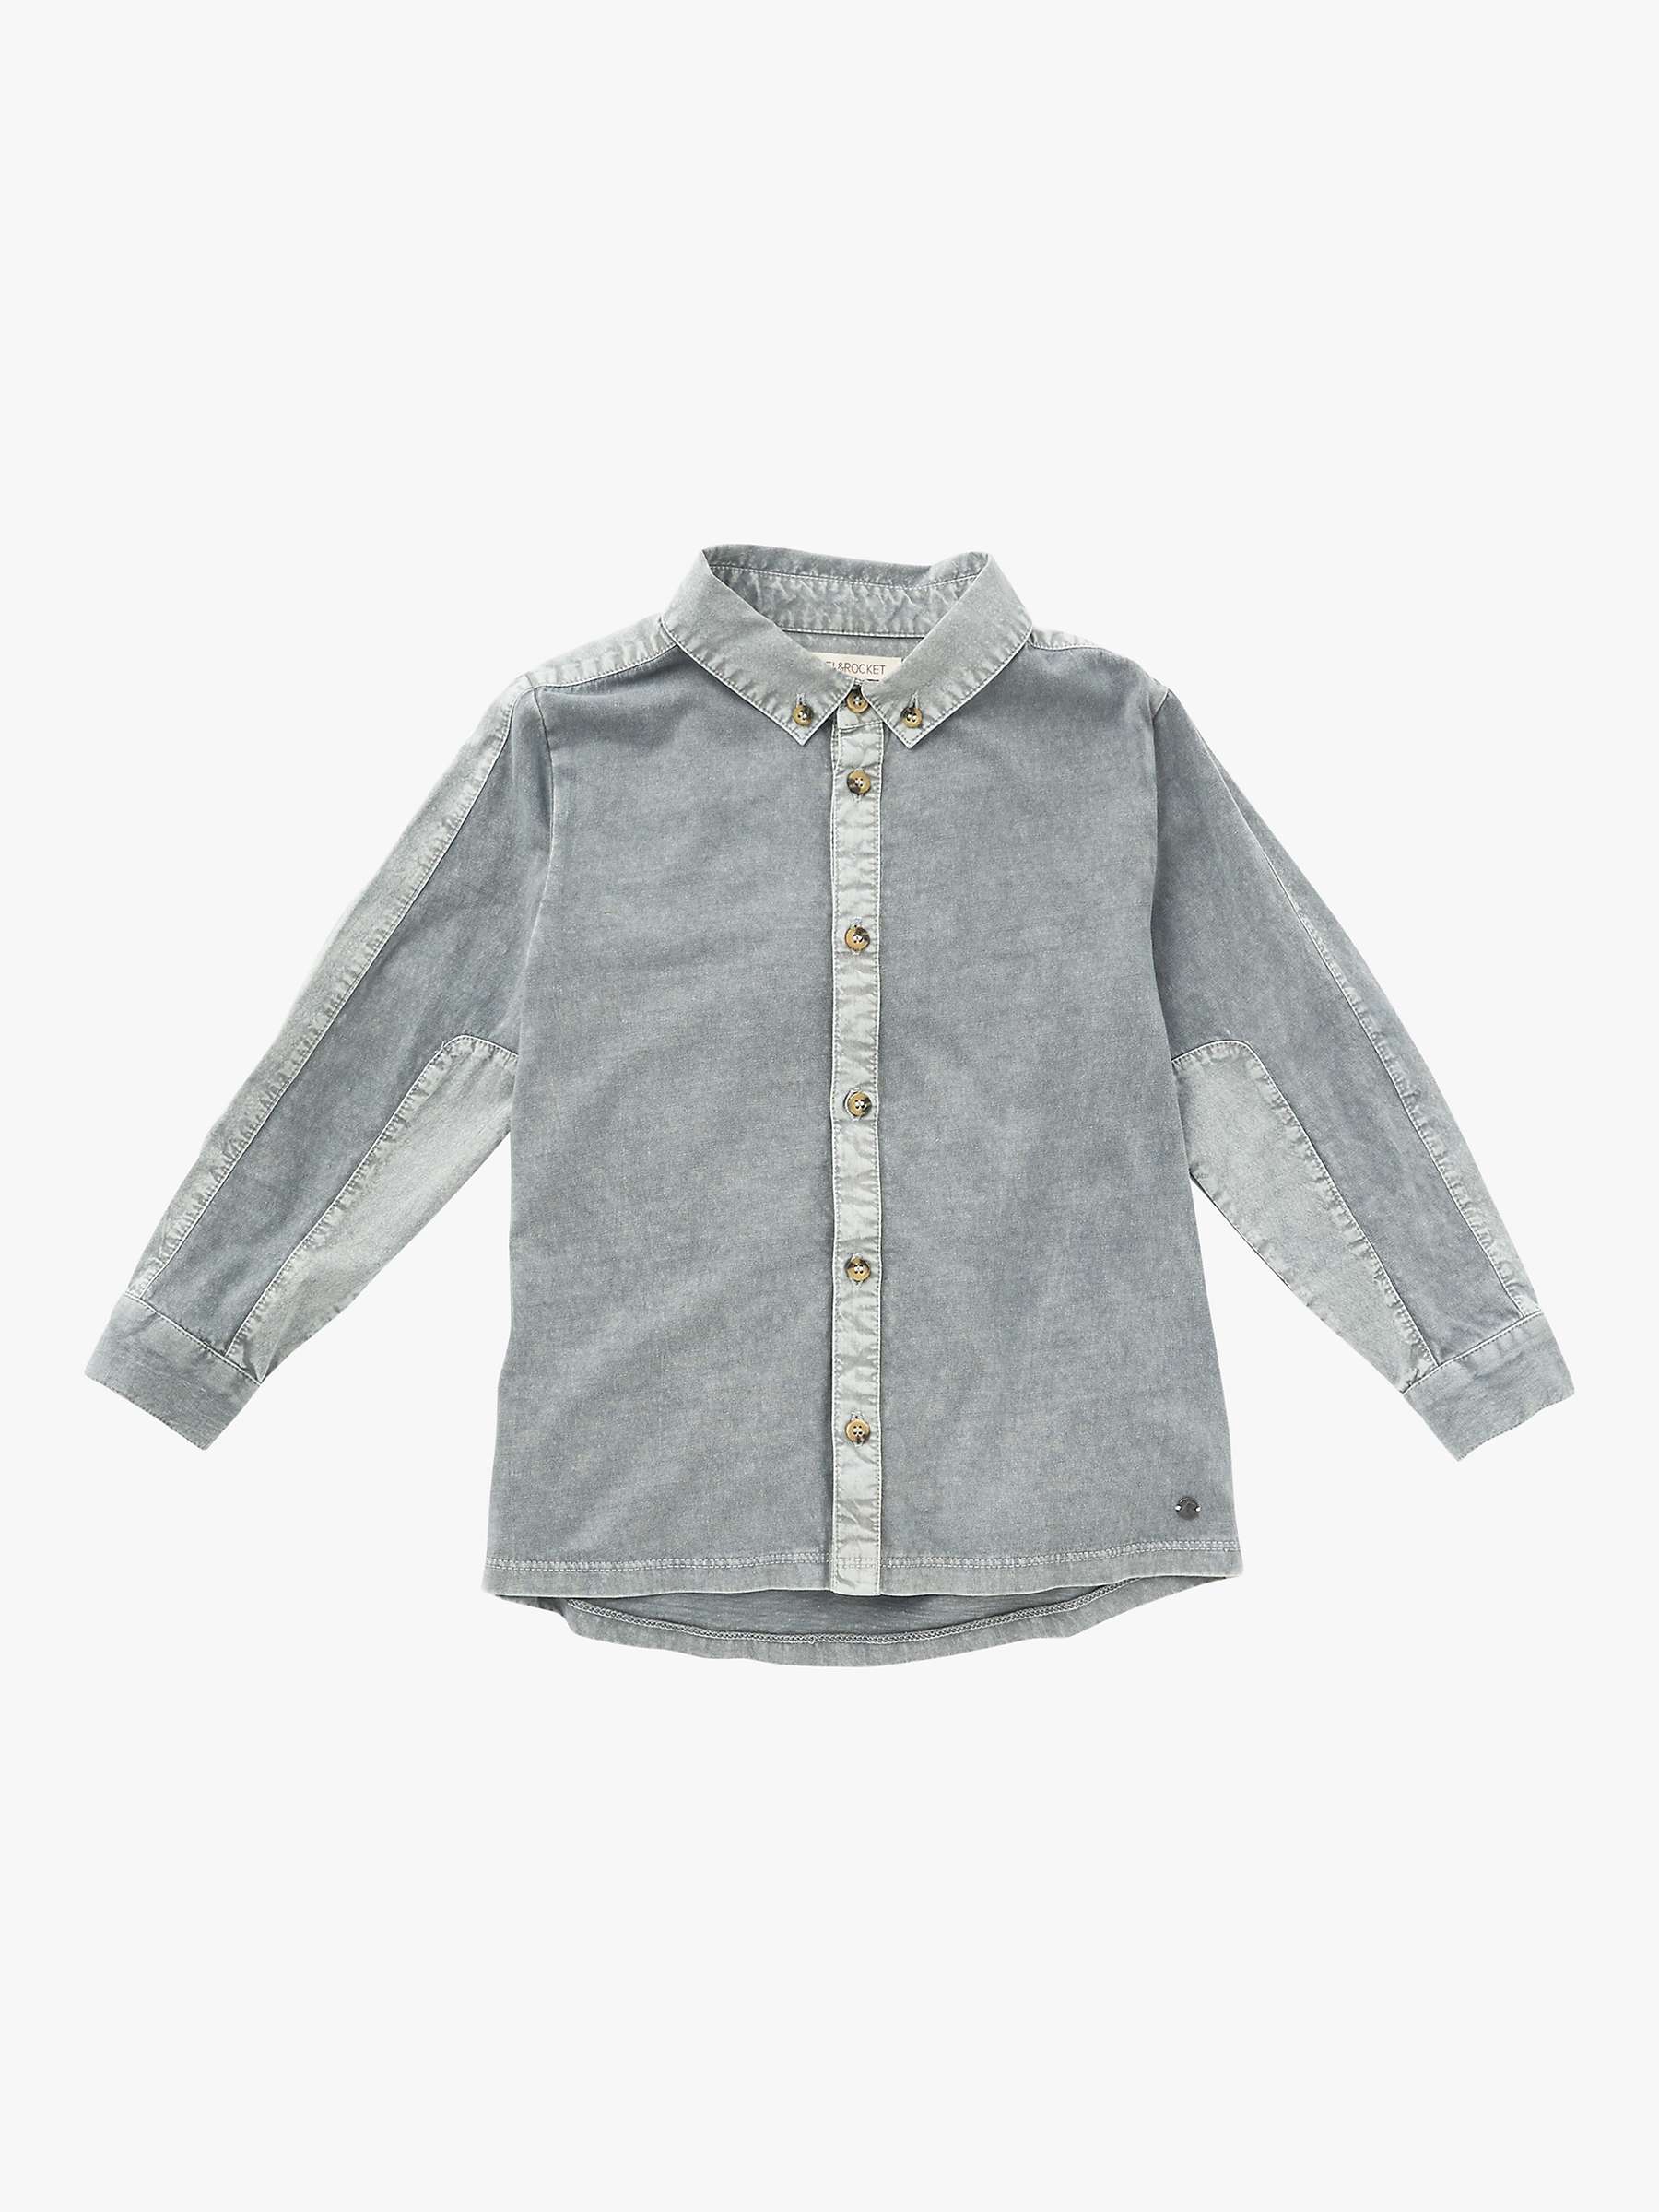 Buy Angel & Rocket Kids' Pocket Shirt, Grey Online at johnlewis.com